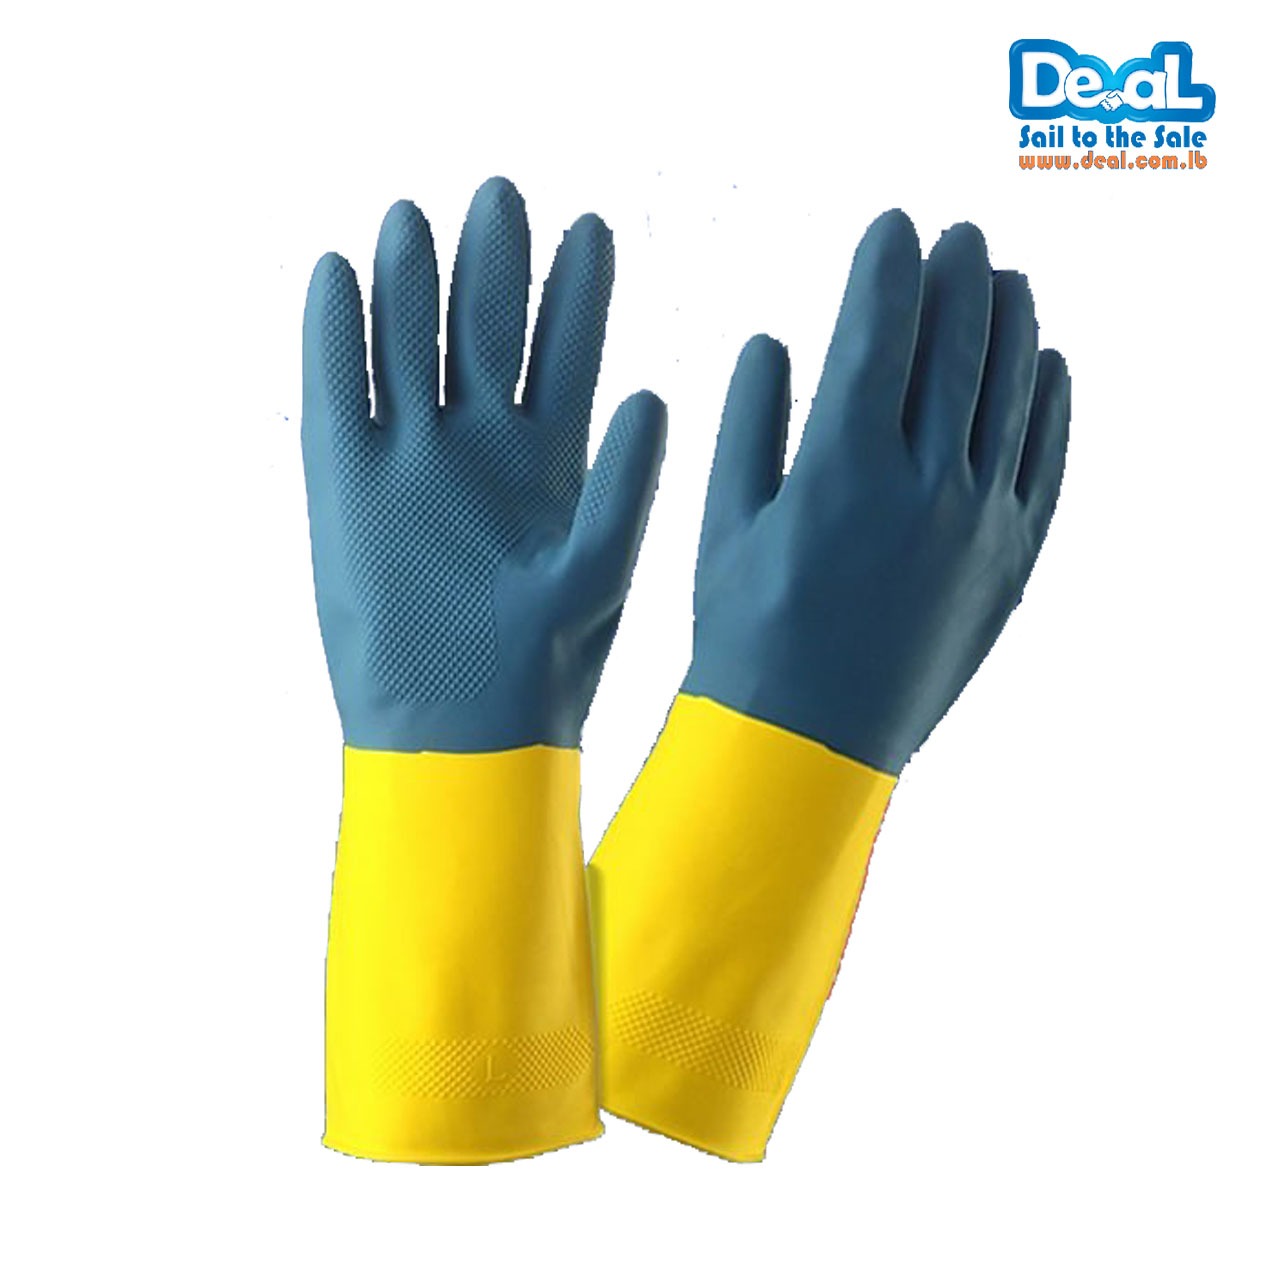 Deal Protective Hand garden Gloves